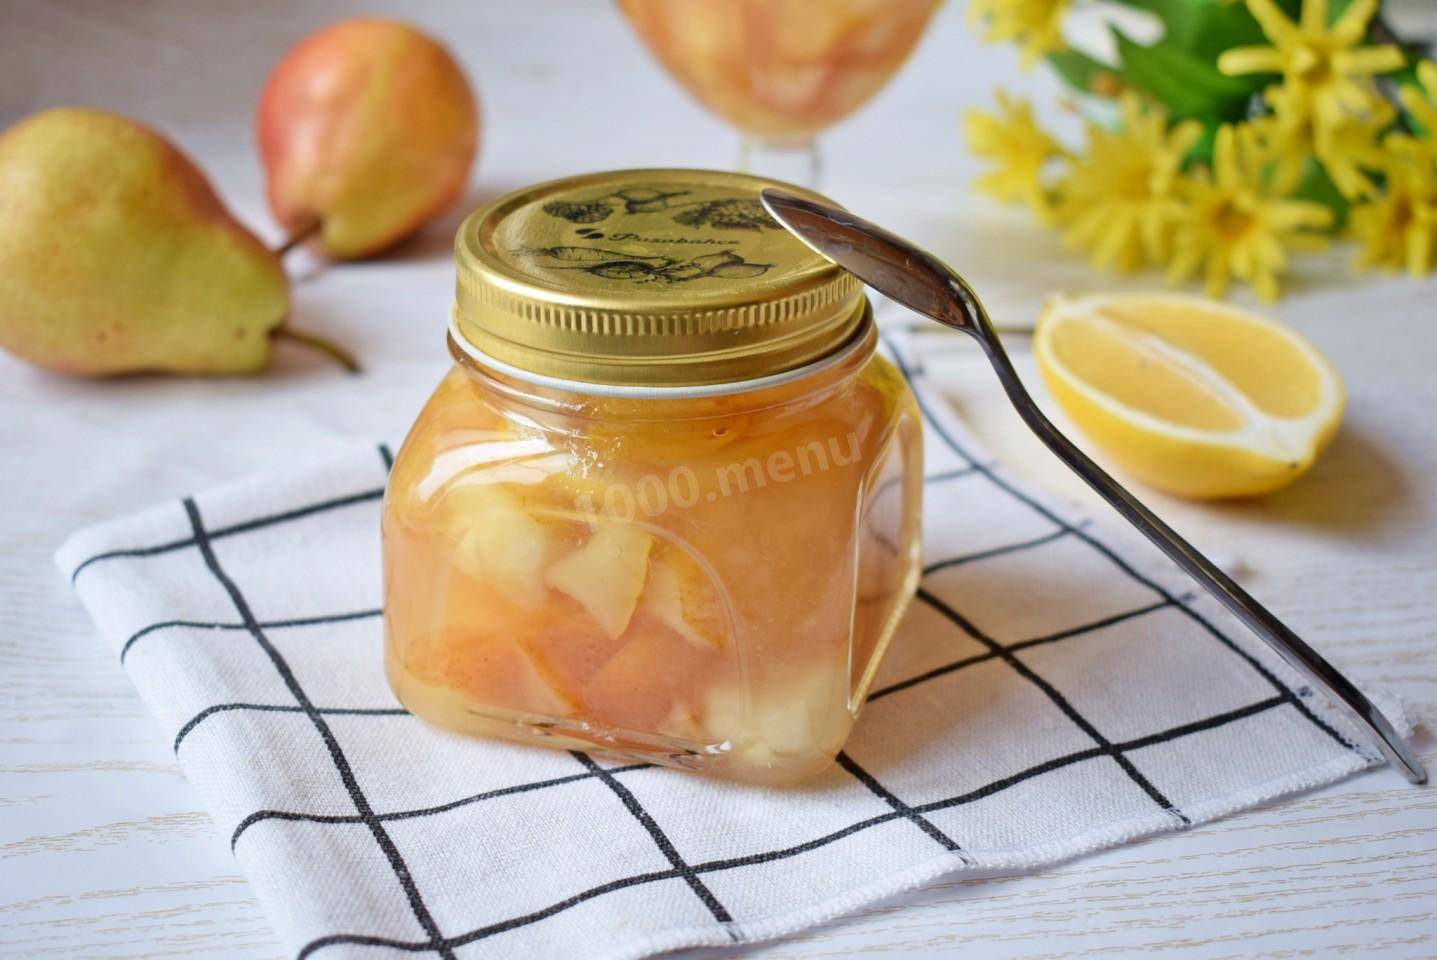 Пошаговый рецепт приготовления варенья из груши с лимоном на зиму